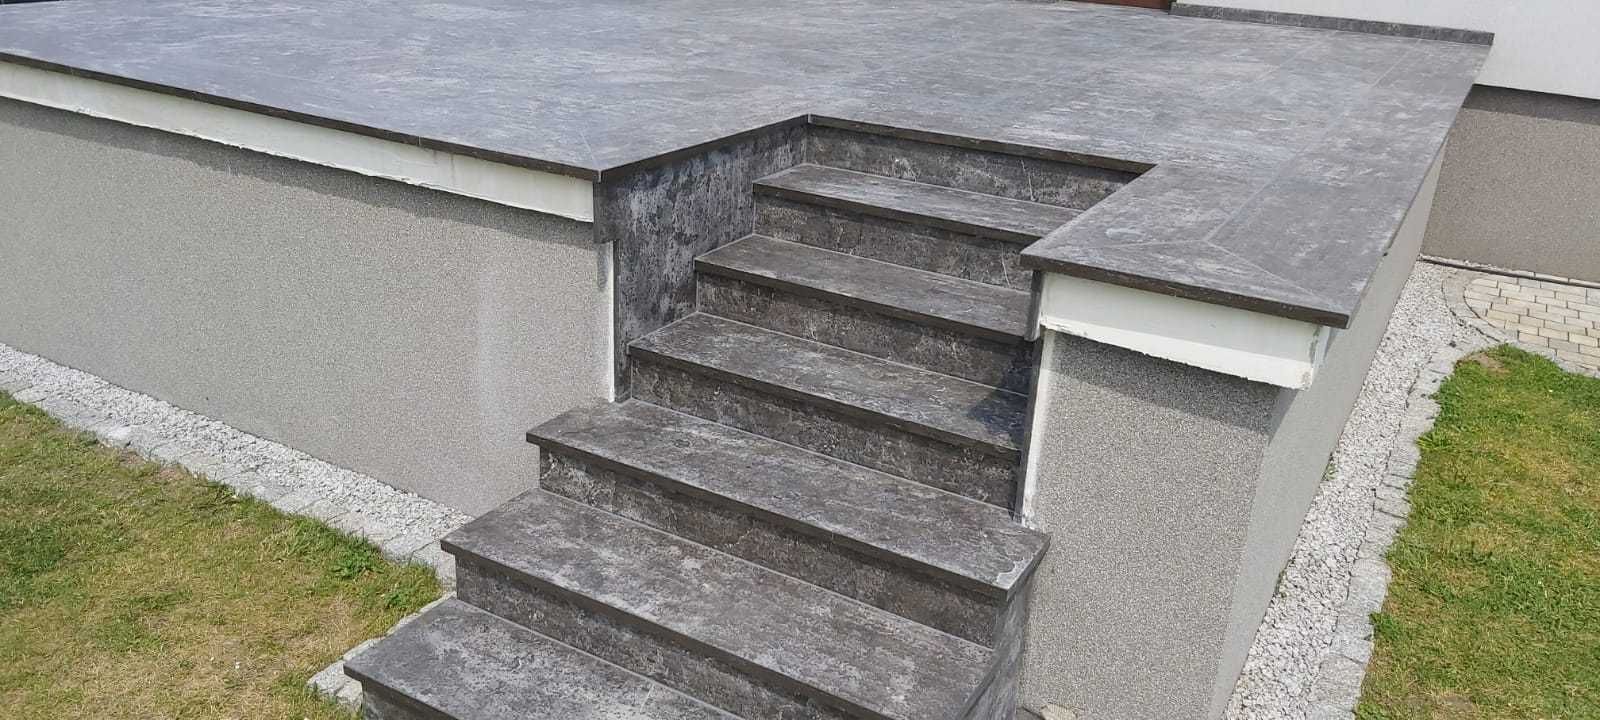 Schody Granitowe Stopnie Trepy Stopnica Płyty Kamienne Granit Kamień